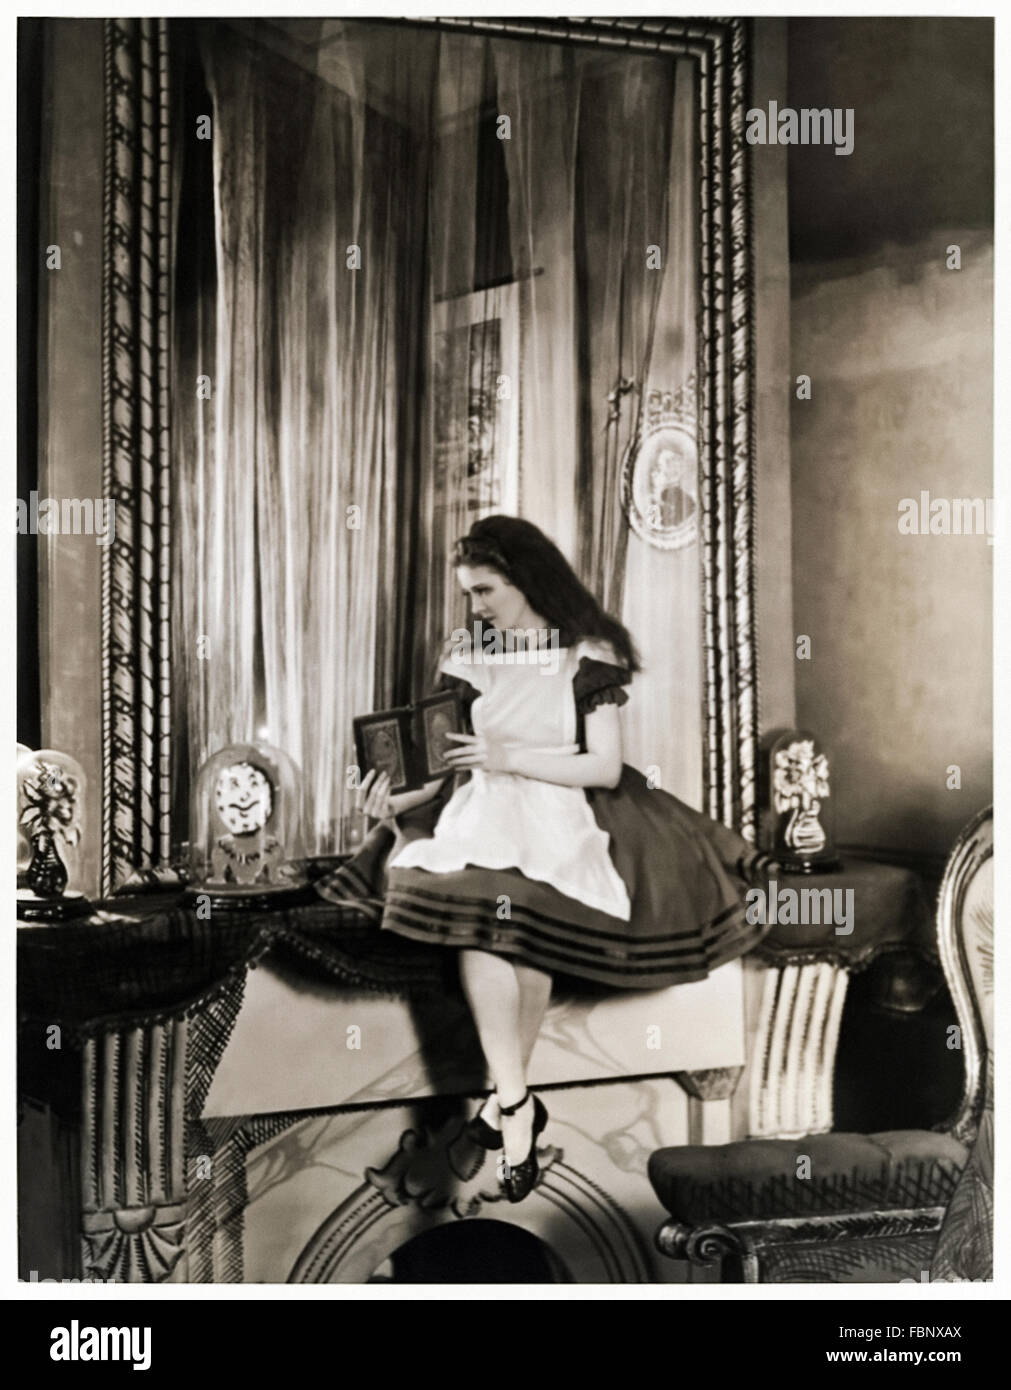 Alice oltre il Looking Glass, pubblicità fotografia per il 1932 adattamento teatrale di Alice nel paese delle meraviglie" da Lewis Carroll (1832-1898) starring Josephine Hutchinson (1903-1998) come Alice. Foto Stock